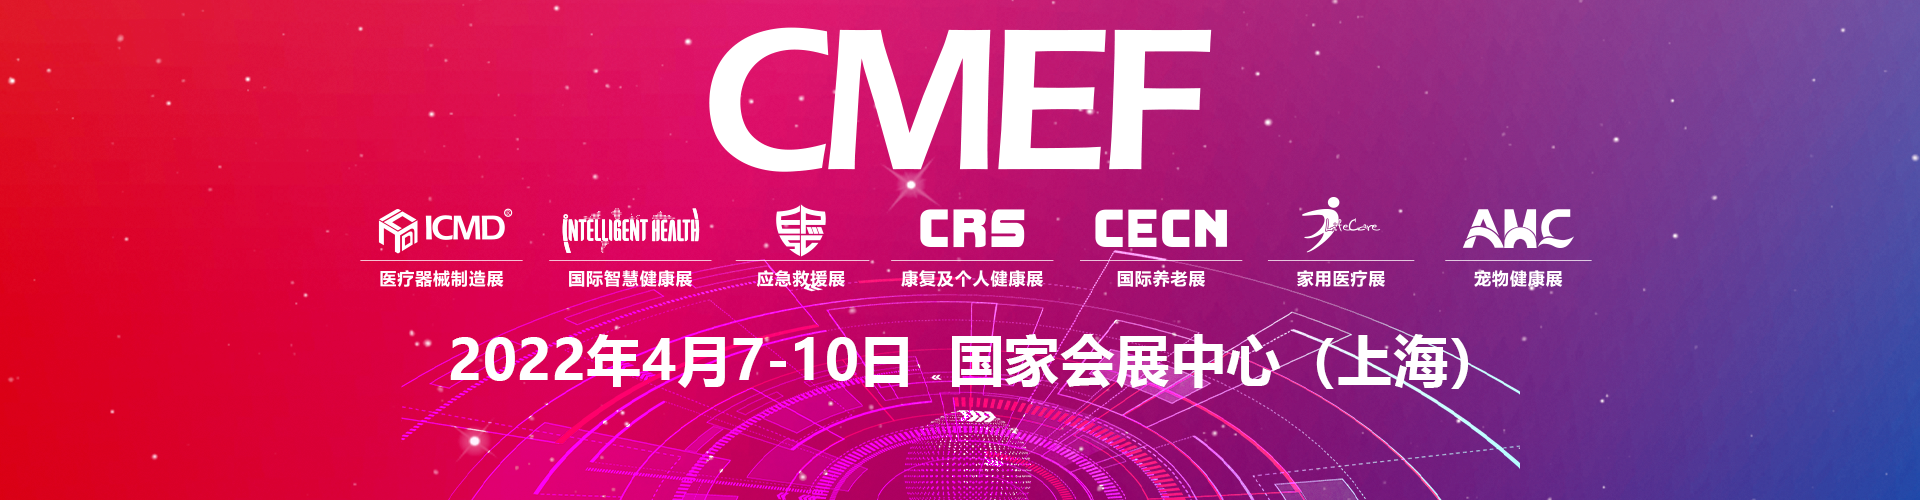 【延期】出展上海CMEF 2022展览